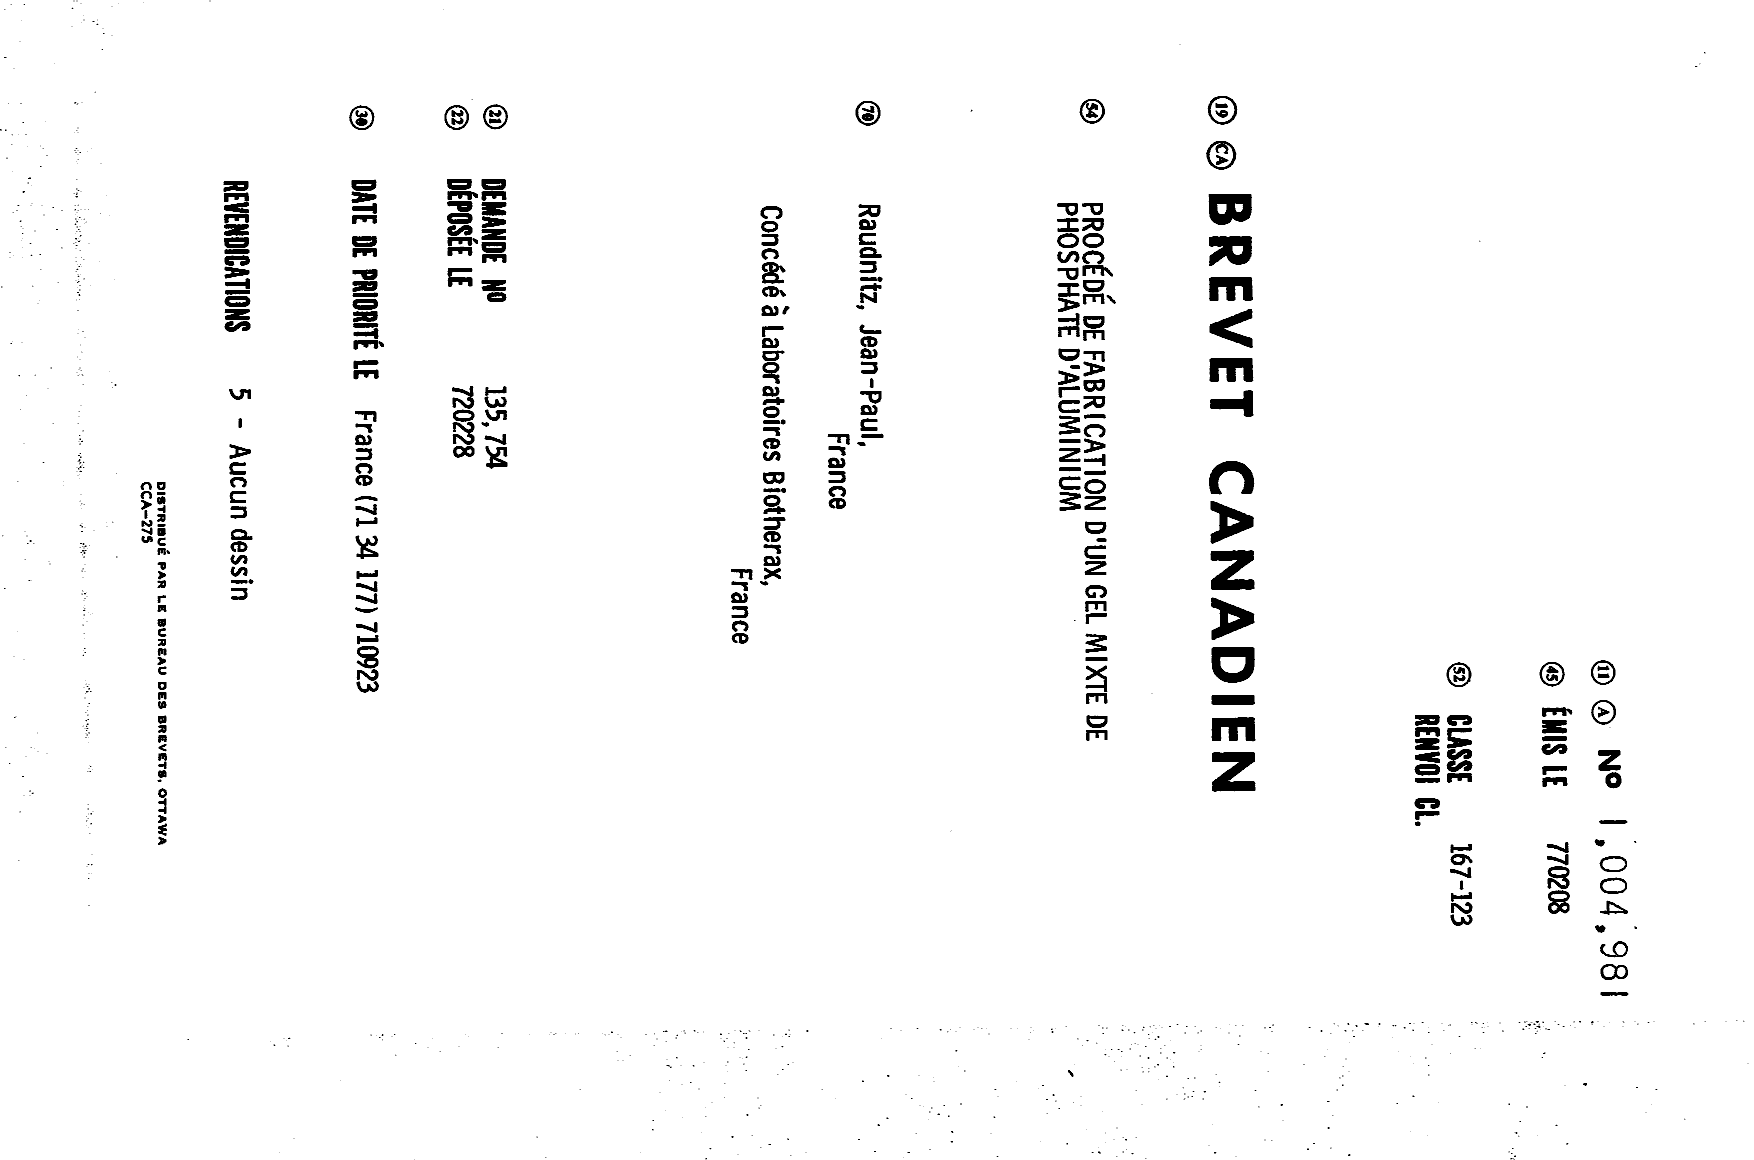 Document de brevet canadien 1004981. Page couverture 19931227. Image 1 de 1